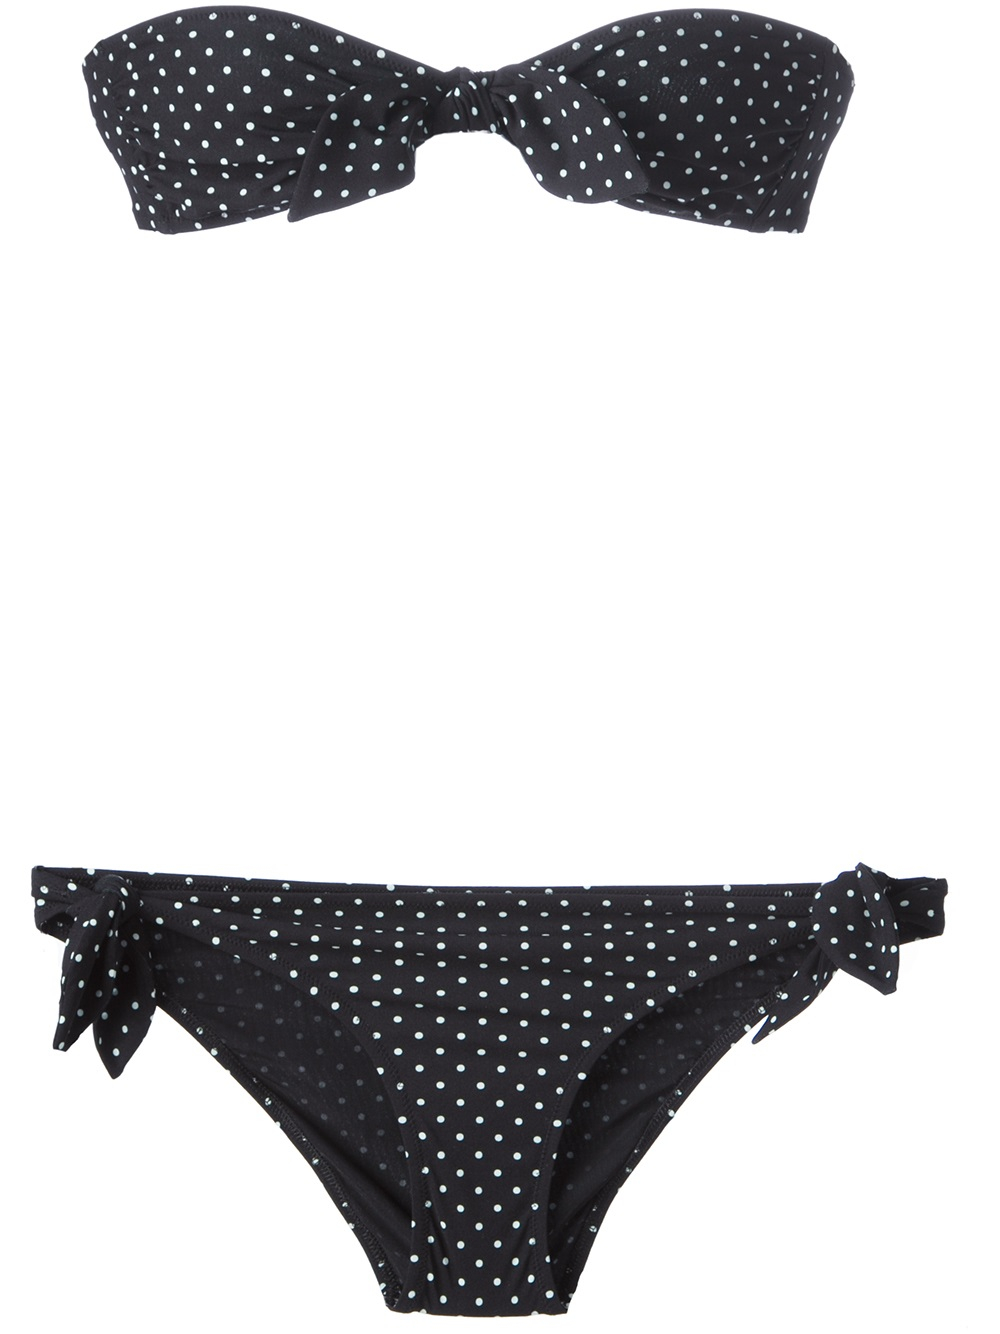 Dolce & Gabbana Polka Dot Bikini in Black - Lyst